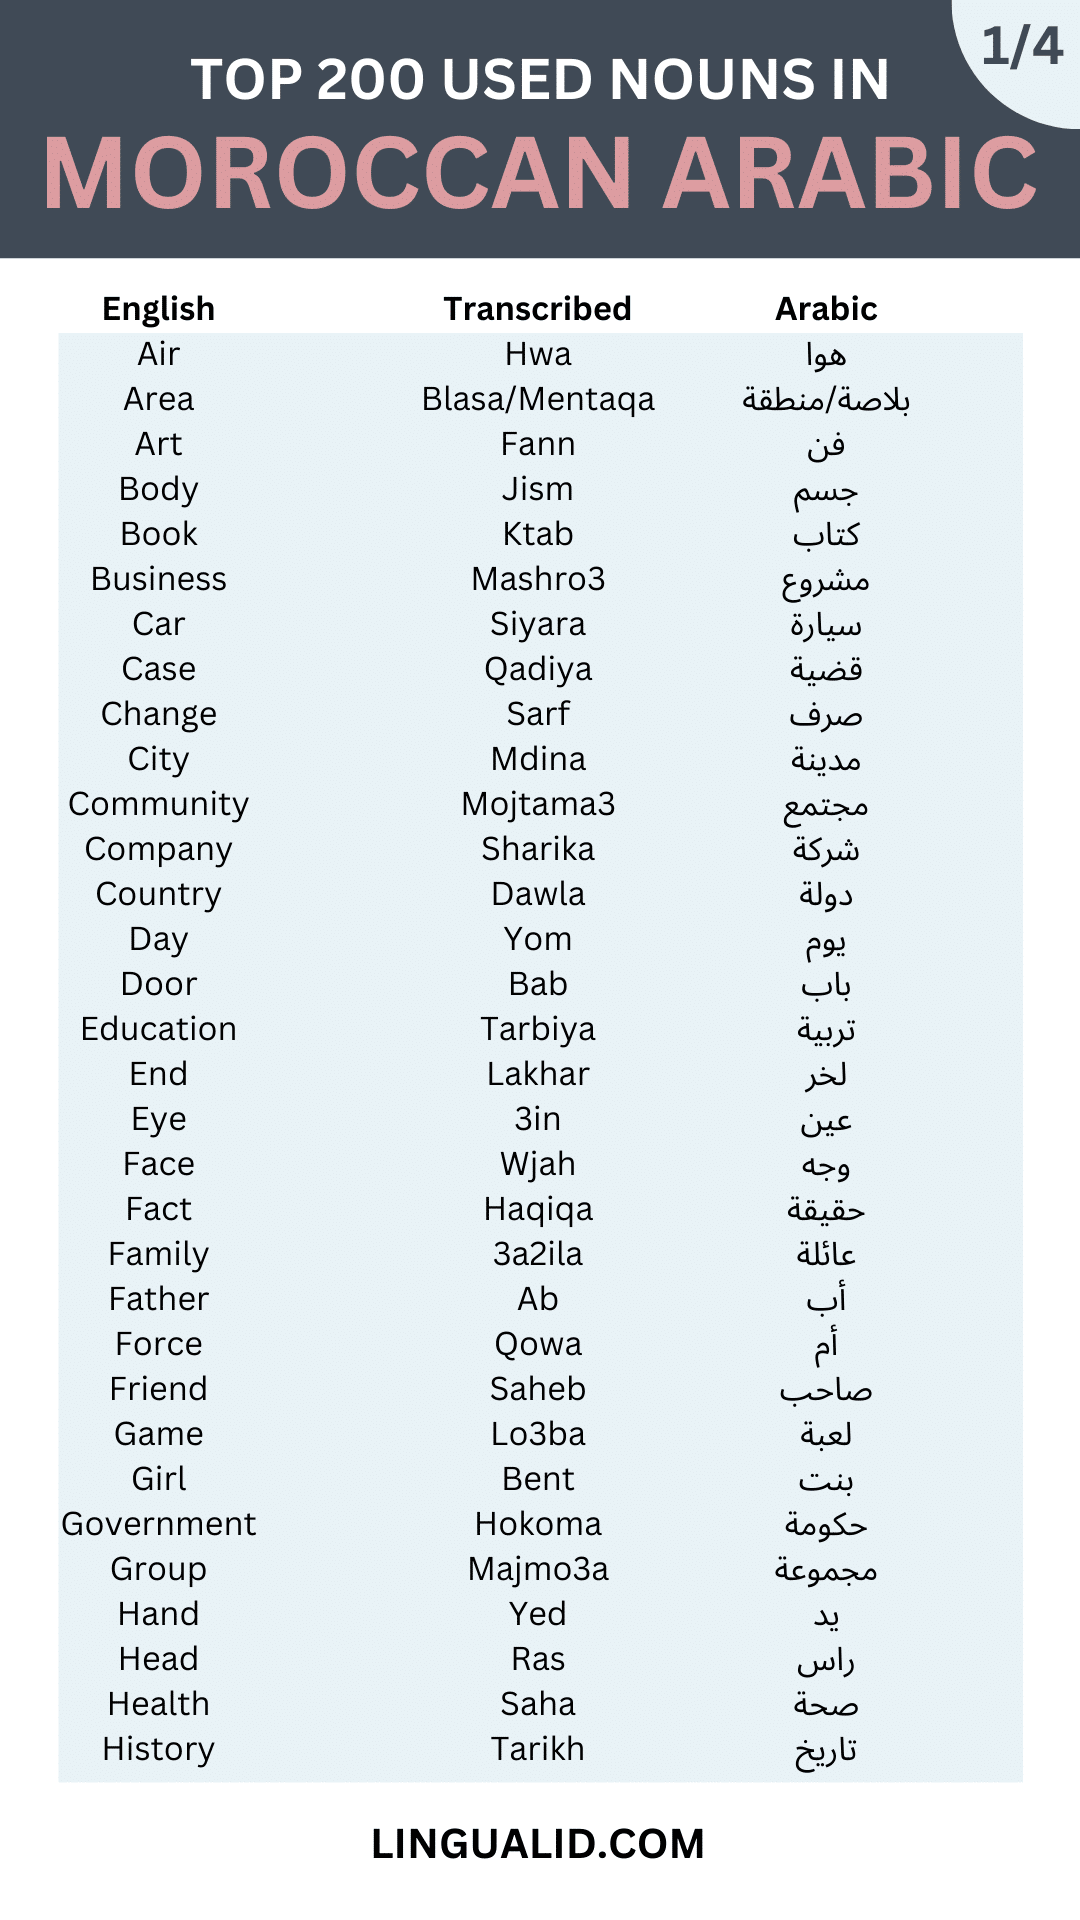 TOP 200 common nouns IN MOROCCAN ARABIC 1